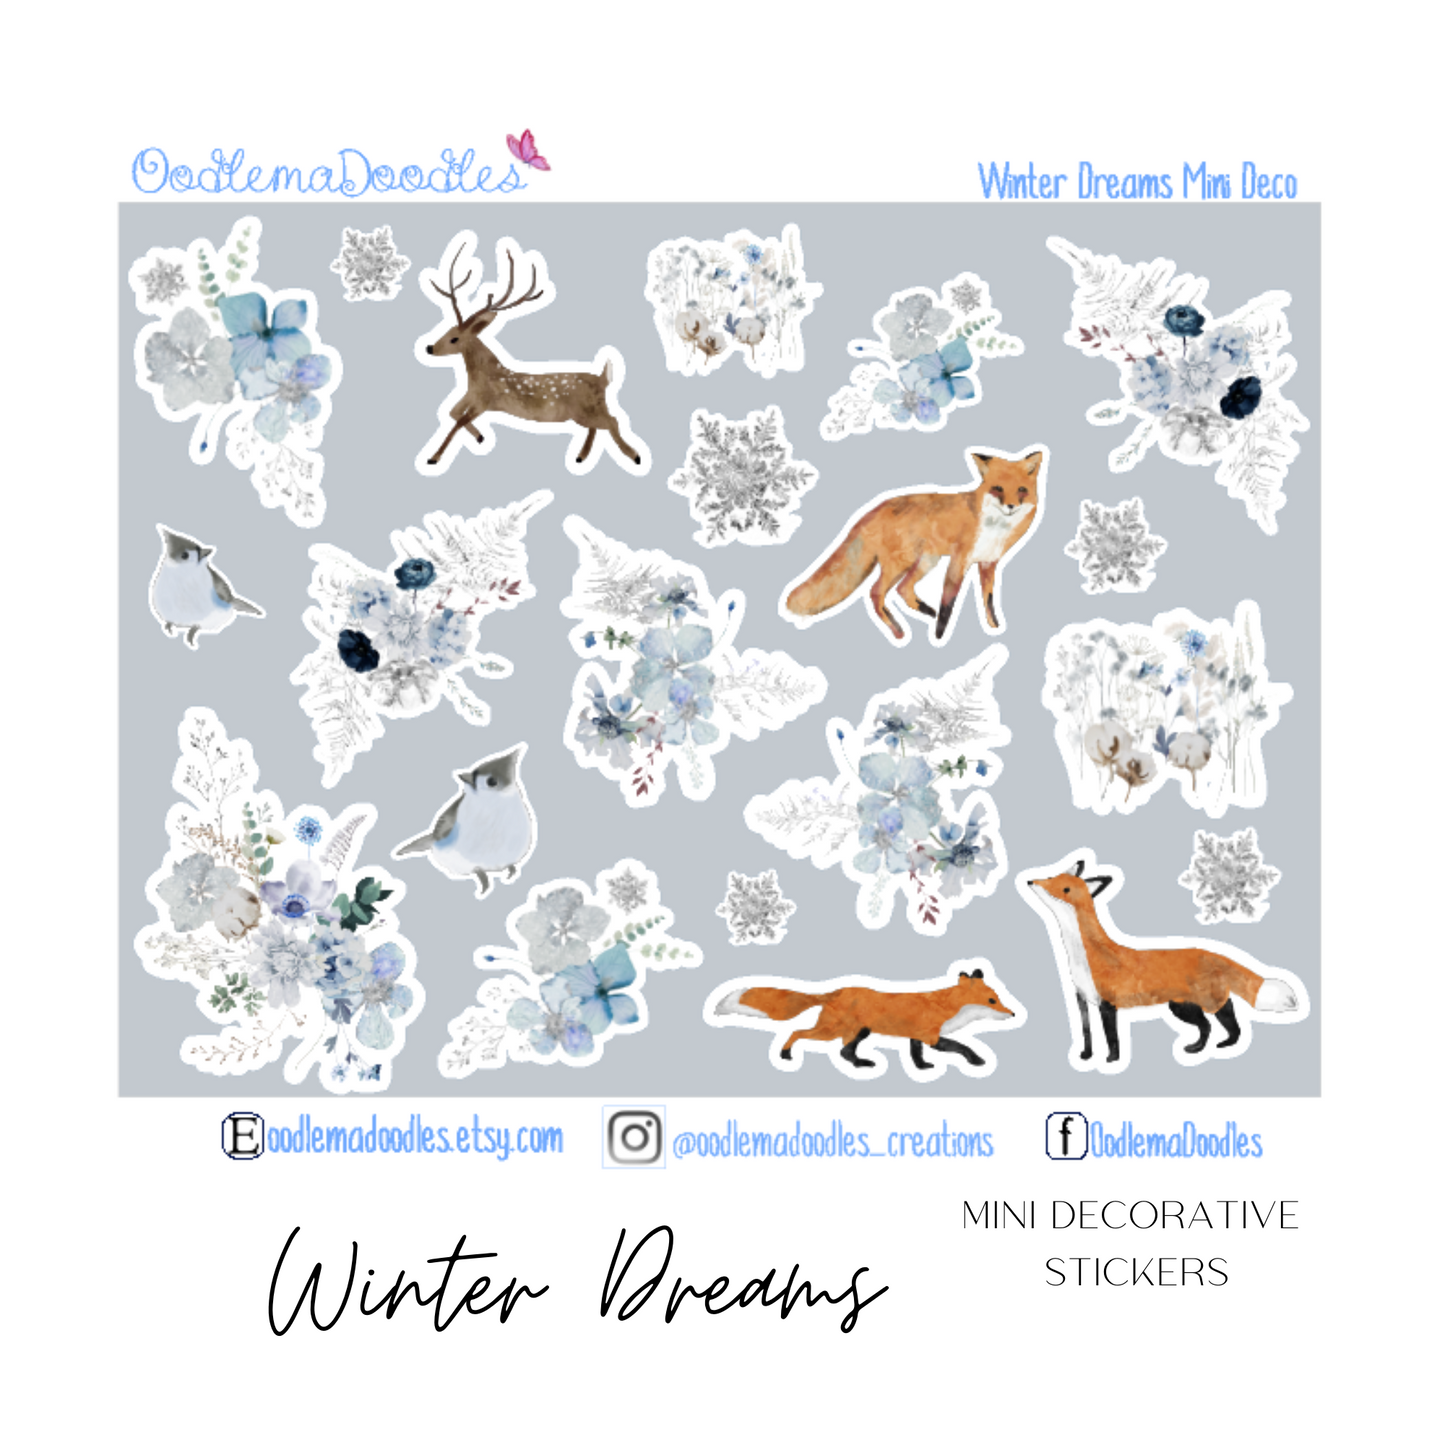 Winter Dreams Mini Decorative Stickers